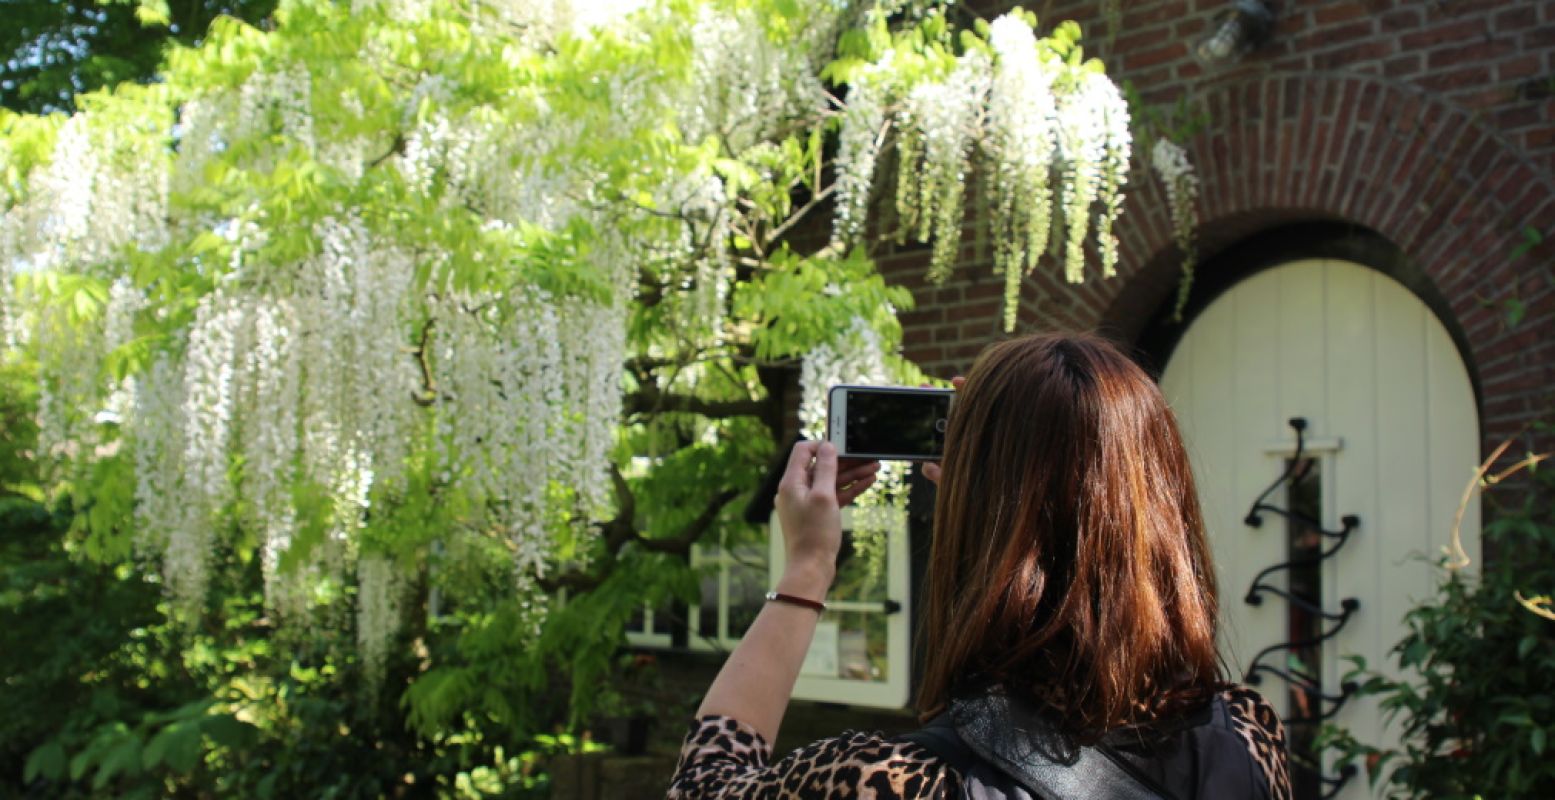 De hortus botanicus is een fotogenieke hotspot waar je helemaal los kunt gaan met je camera. Foto: DagjeWeg.NL.